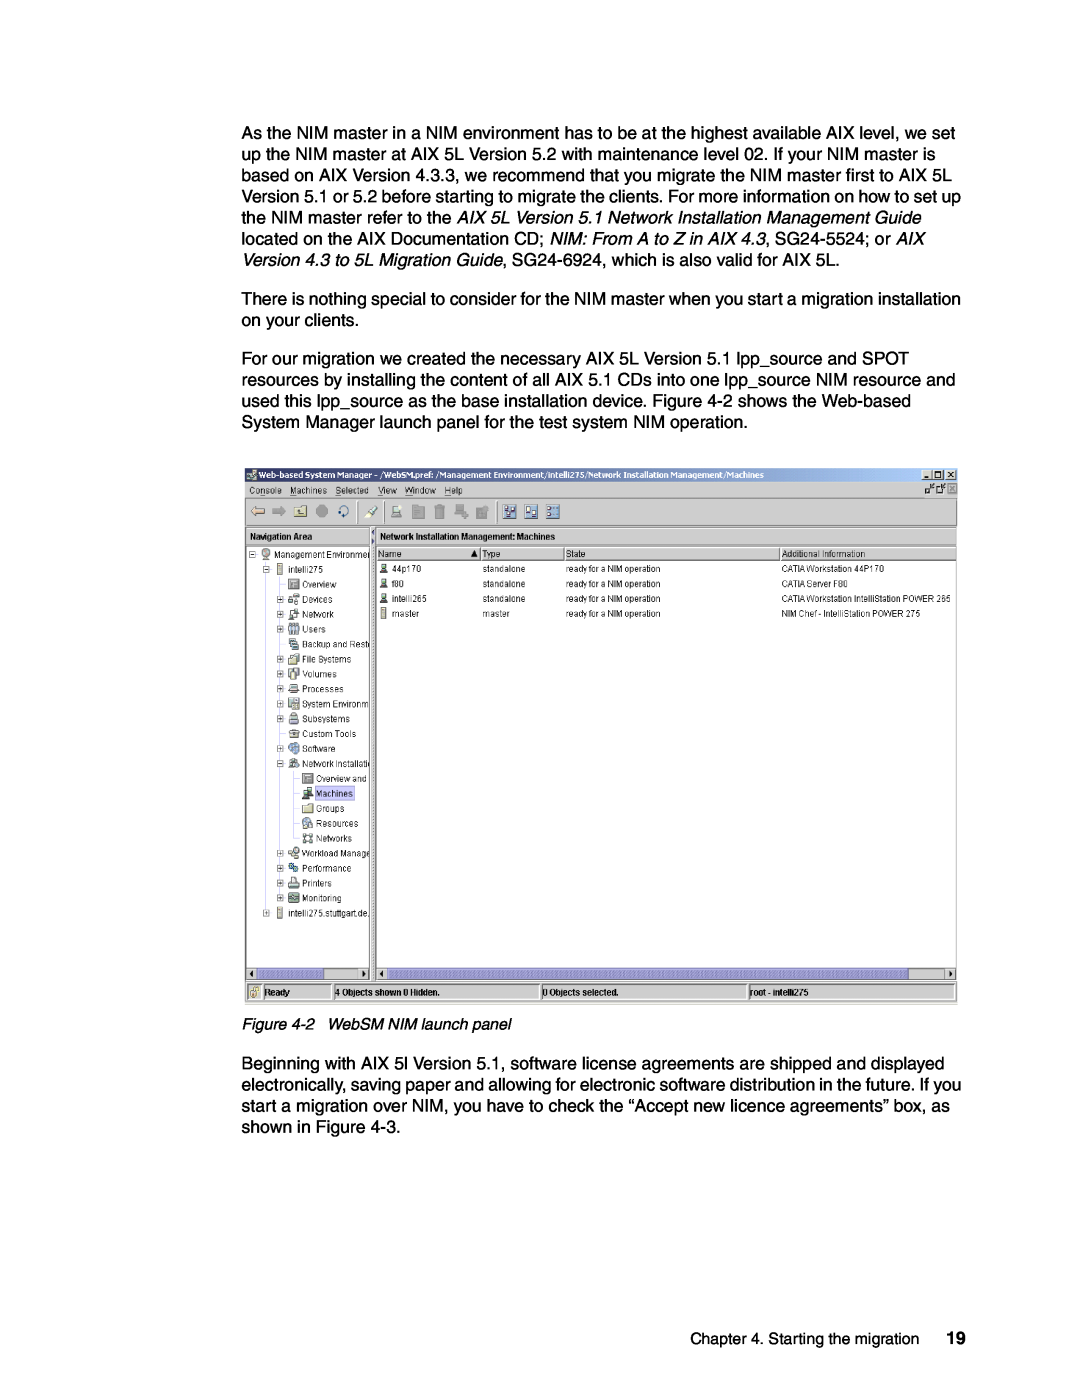 IBM AIX 4.3, AIX5L manual 2WebSM NIM launch panel, Starting the migration 